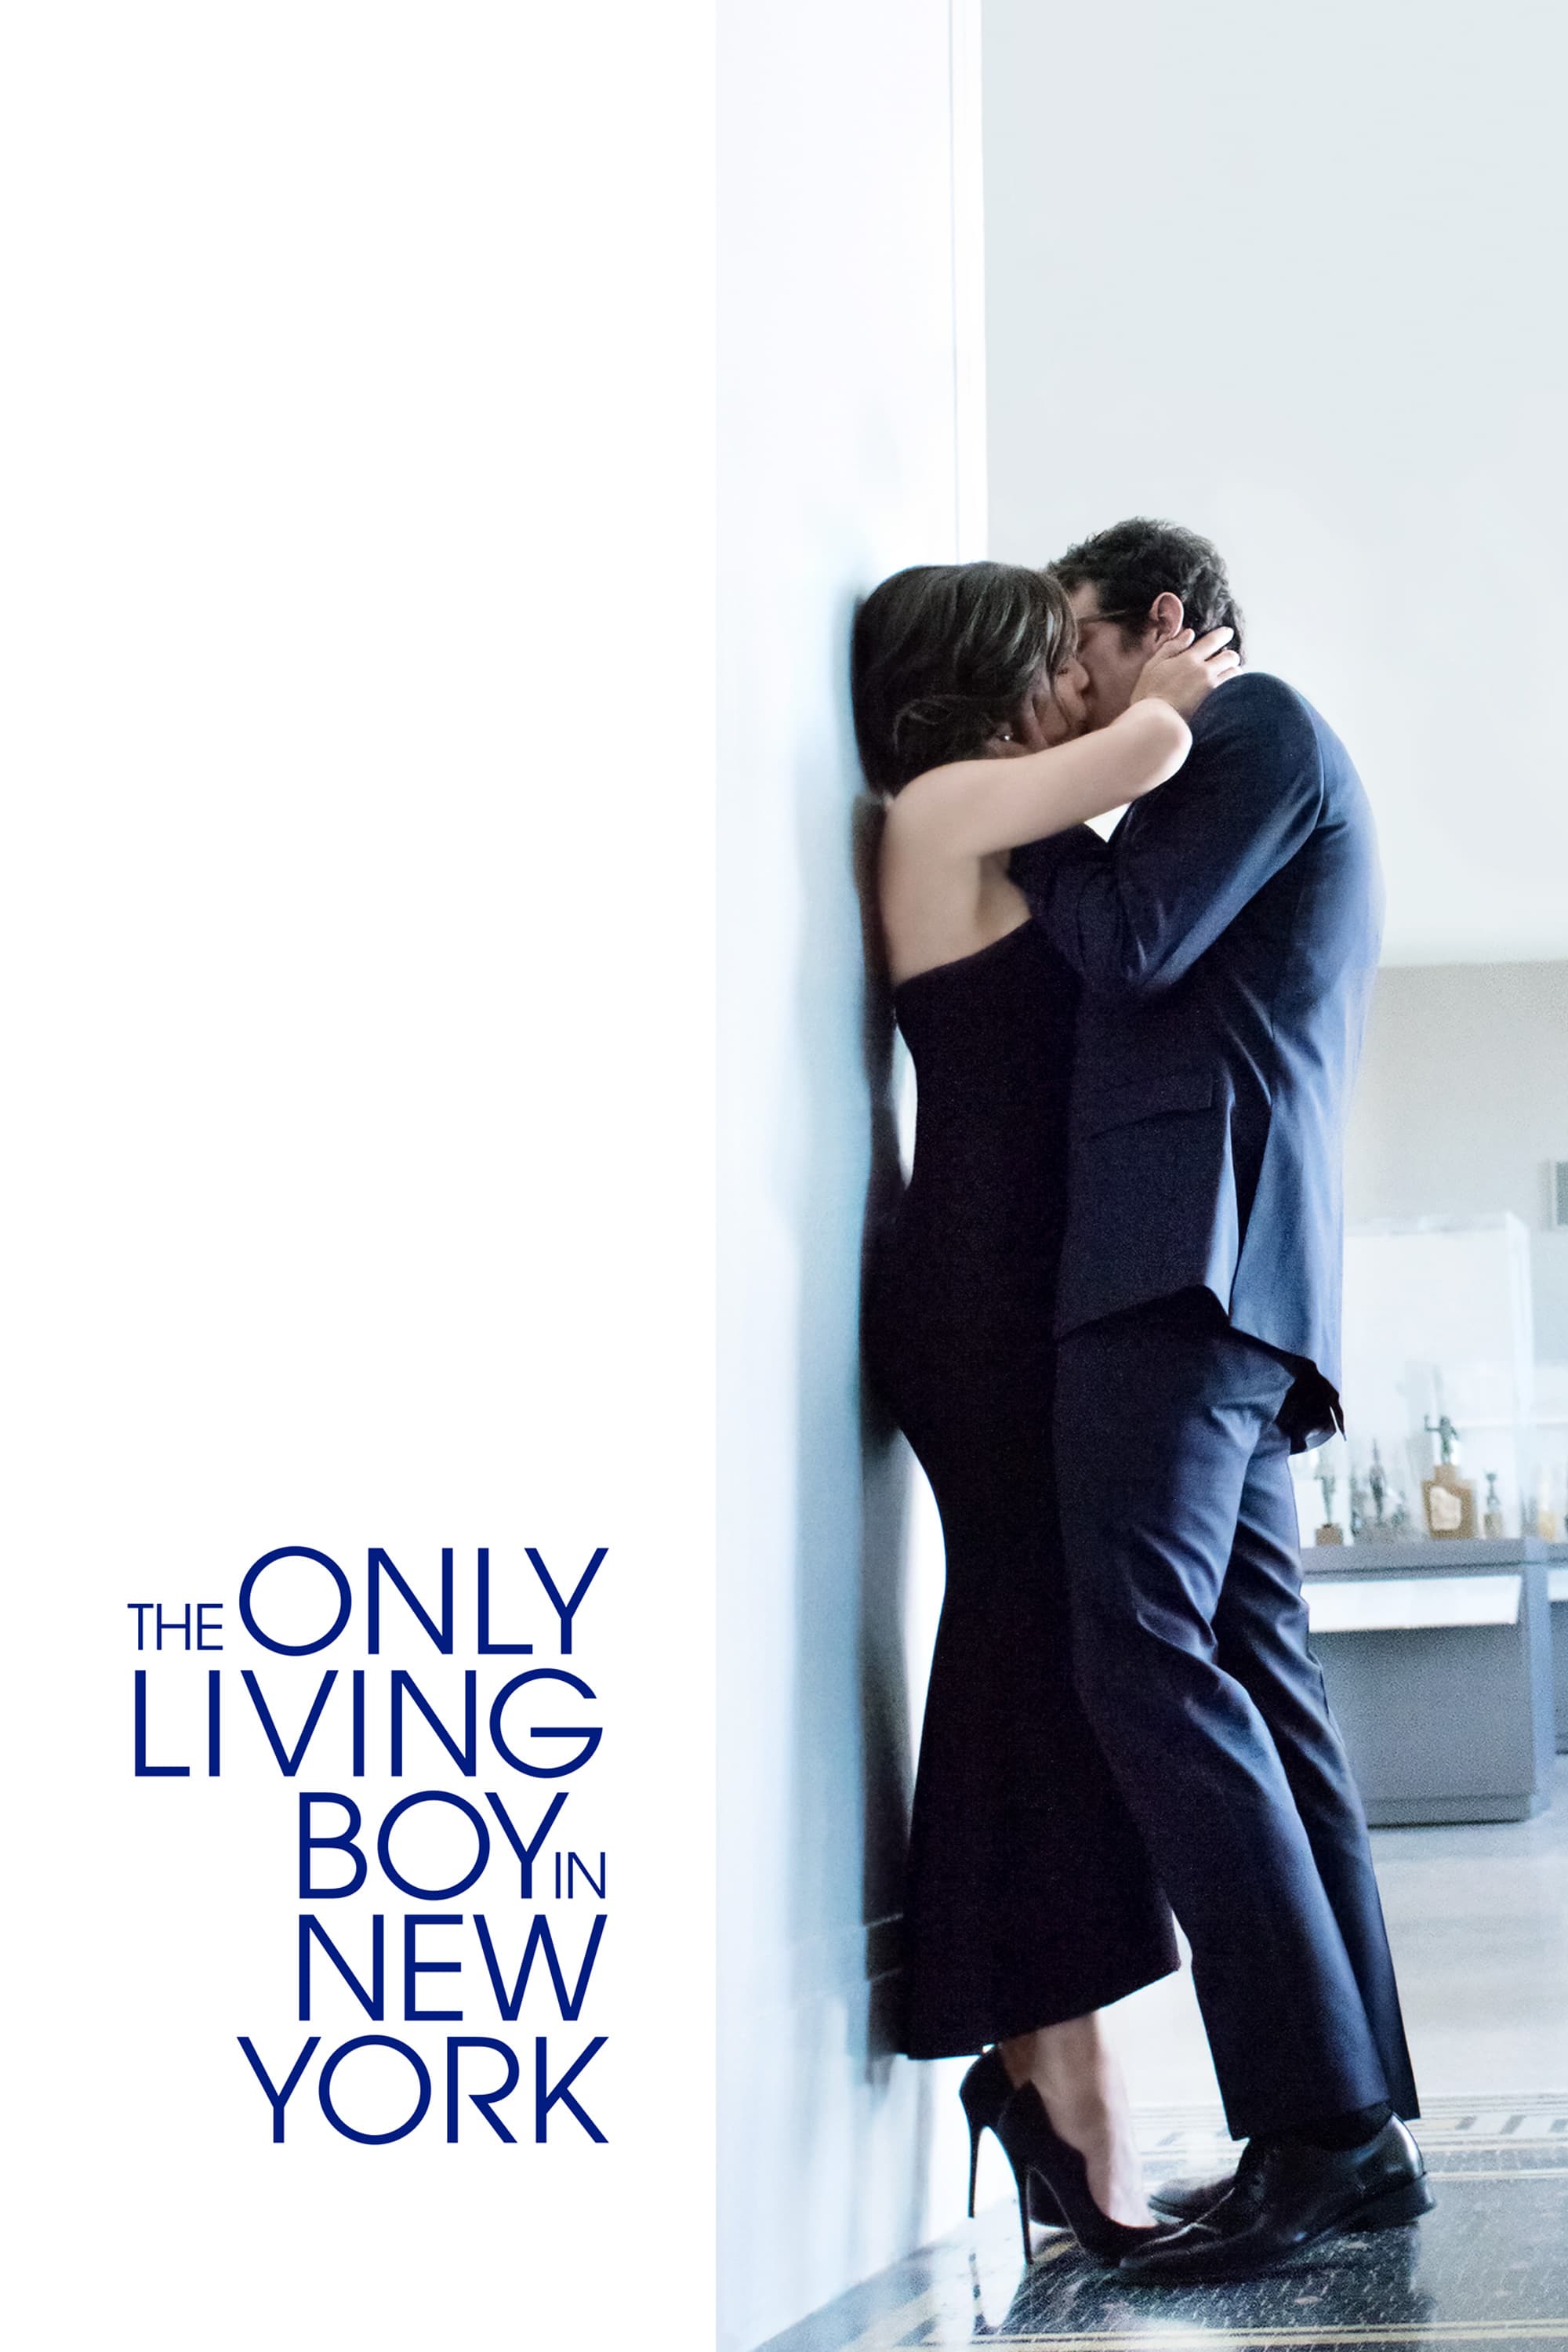 Plakat von "The Only Living Boy in New York"